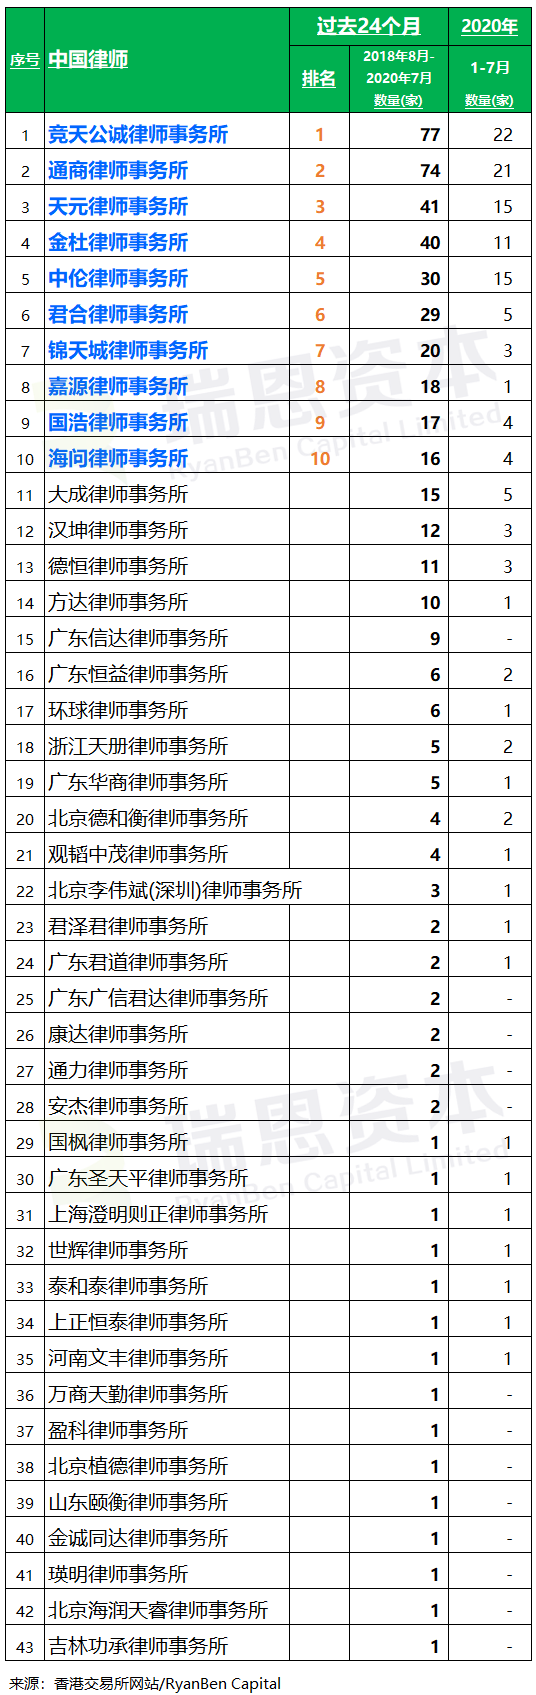 香港 IPO中介机构排行榜 (过去24个月：2018年8月-2020年7月)